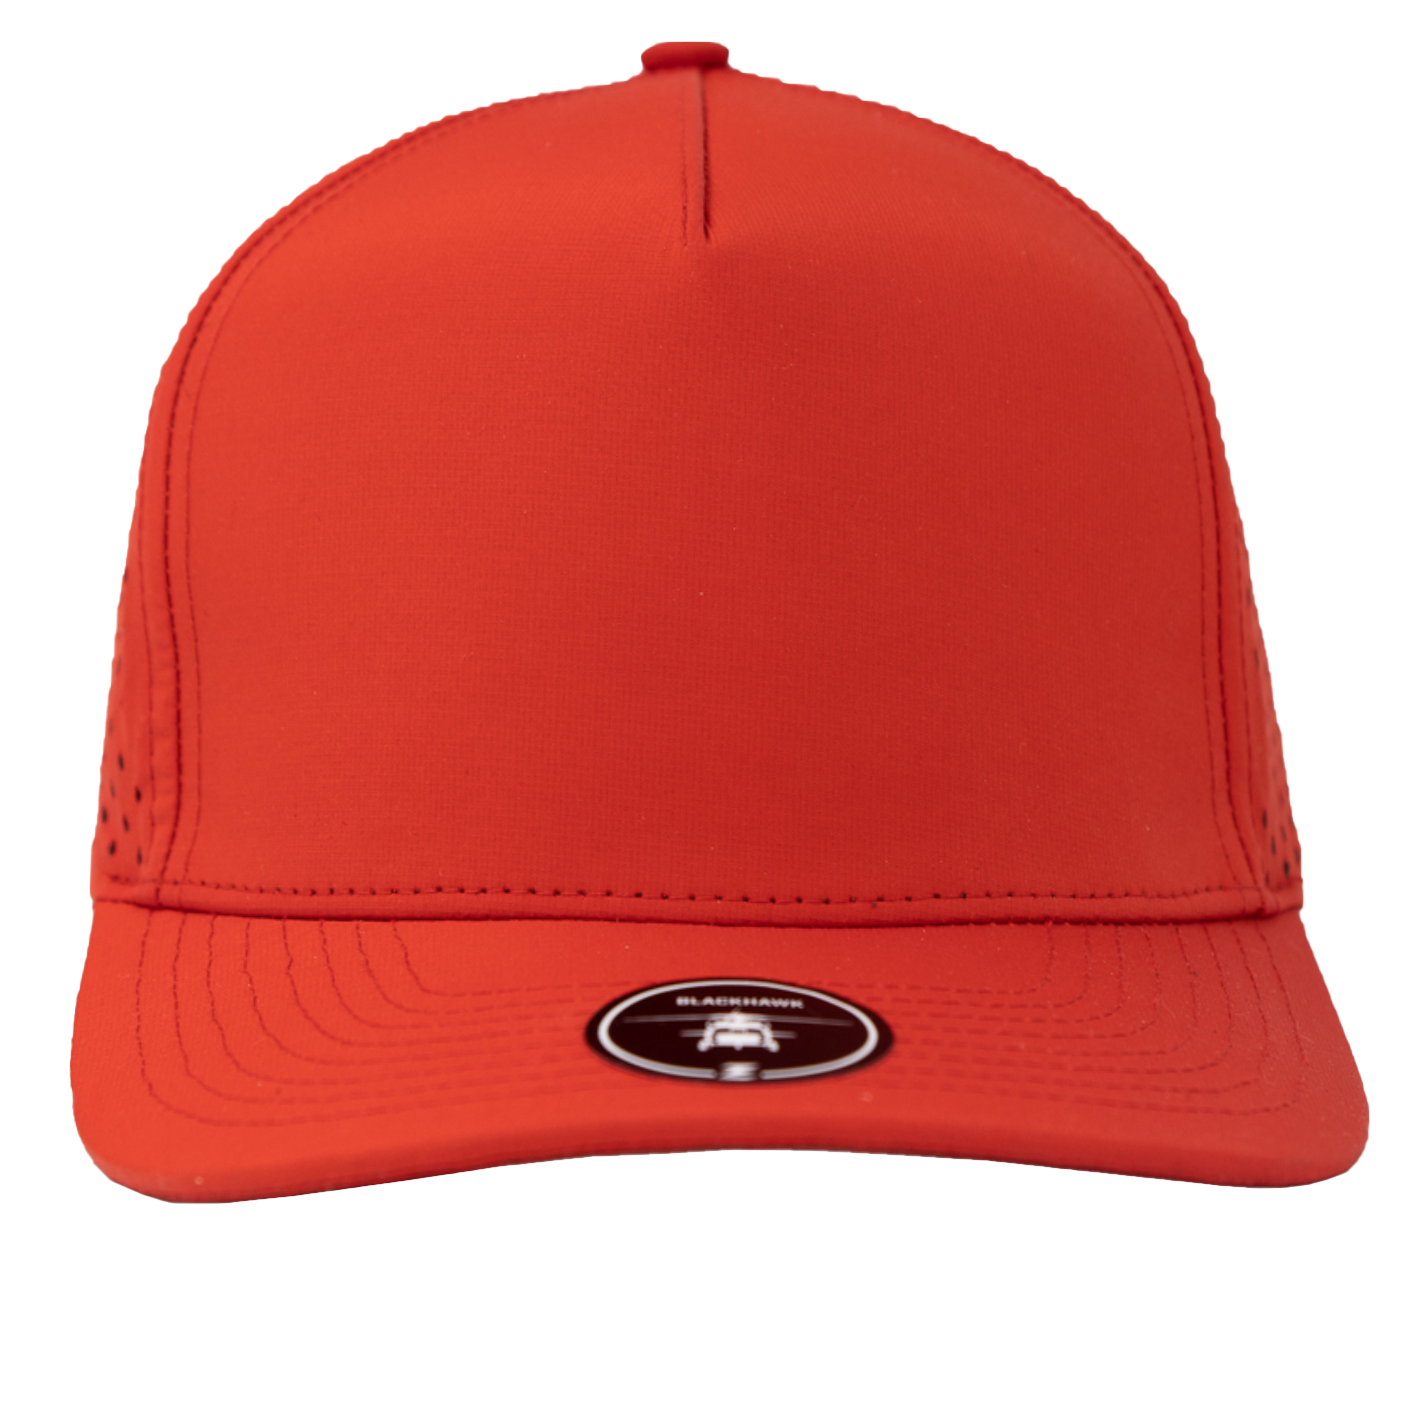 BLACKHAWK Blank-Water Repellent hat-Zapped Headwear-Cardinal-Red-Zapped Headwear